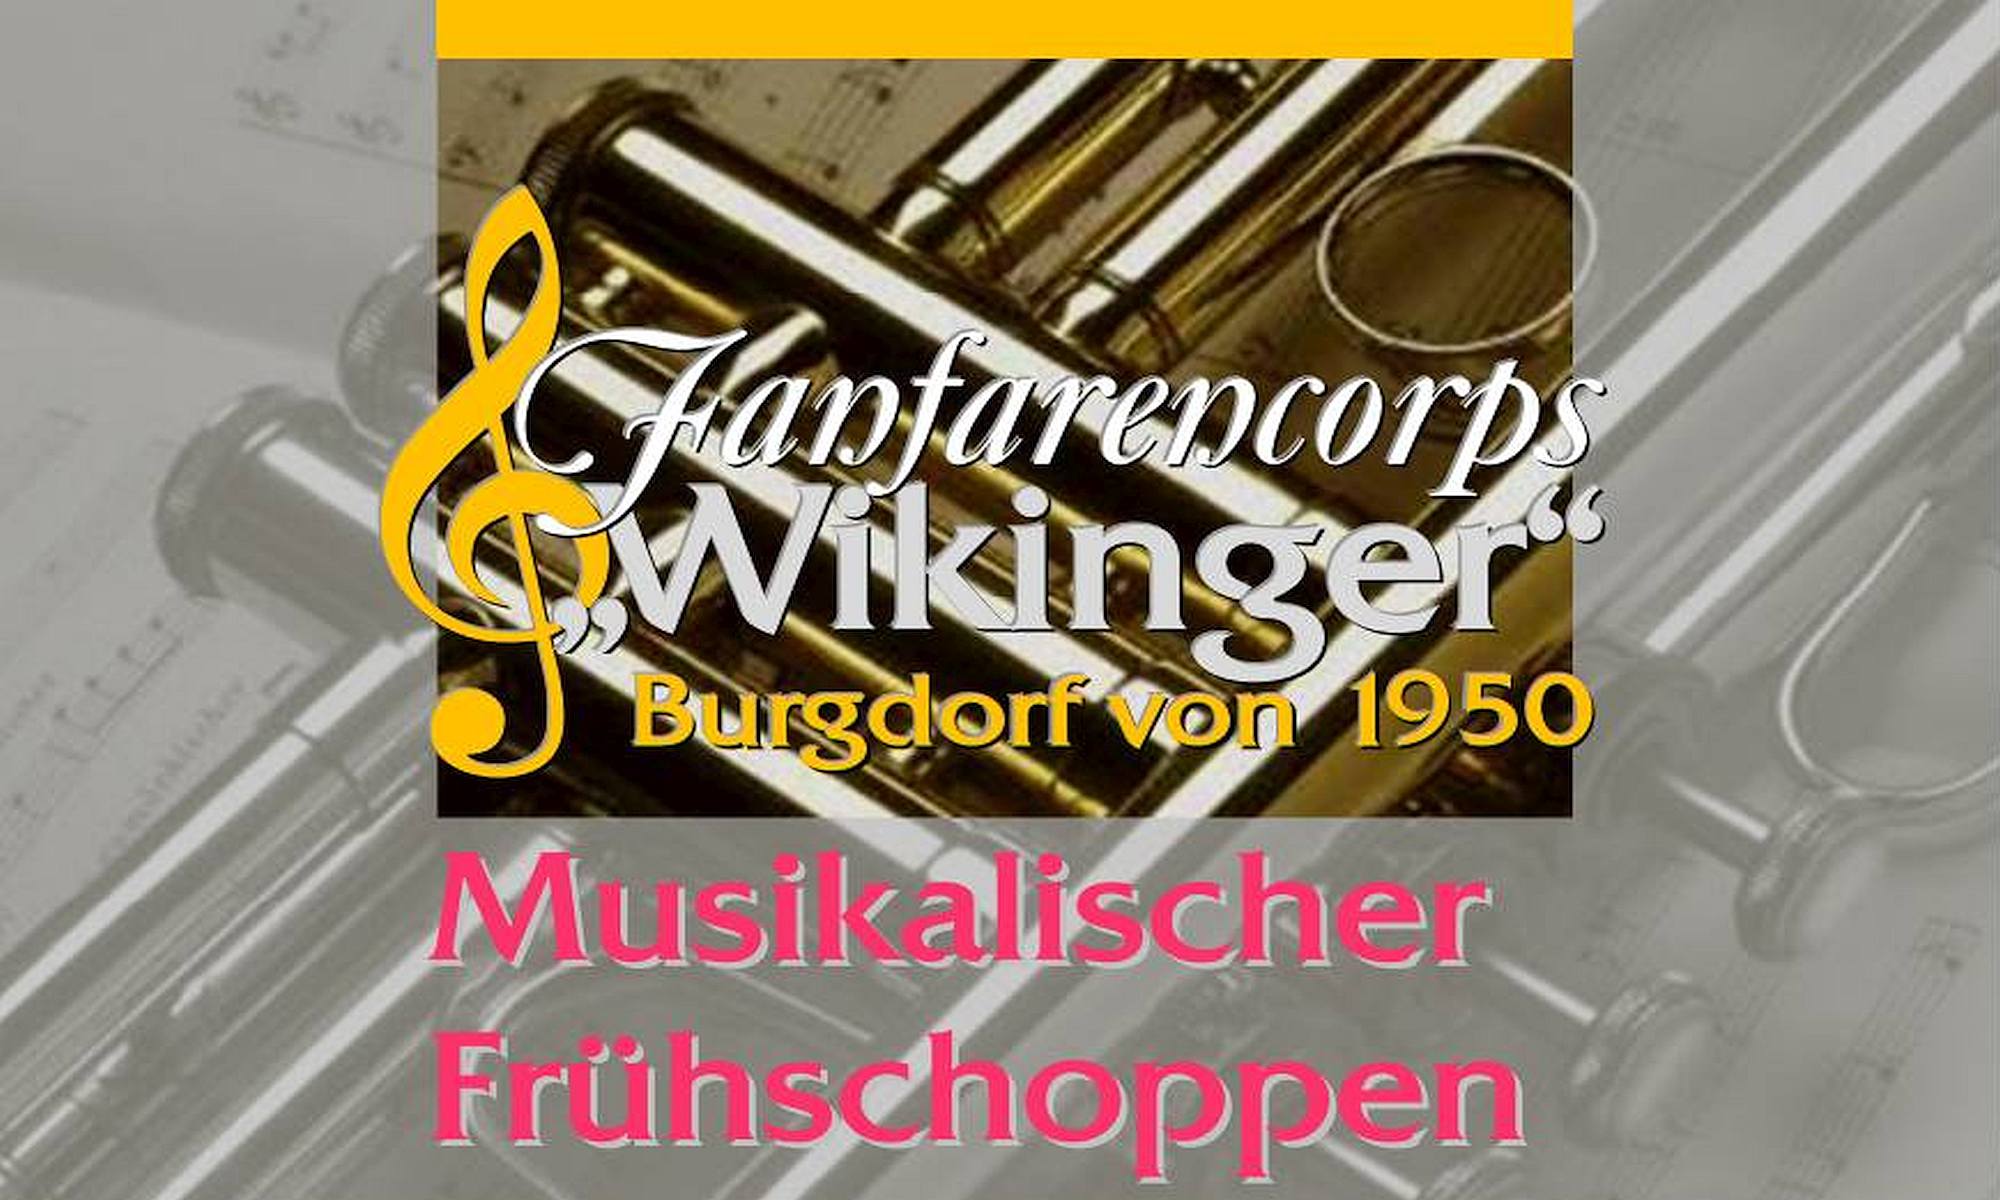 Fanfarencorps „Wikinger“ Burgdorf von 1950 – Einladung zum 1. Mai Frühschoppen am Wikingerheim 2022